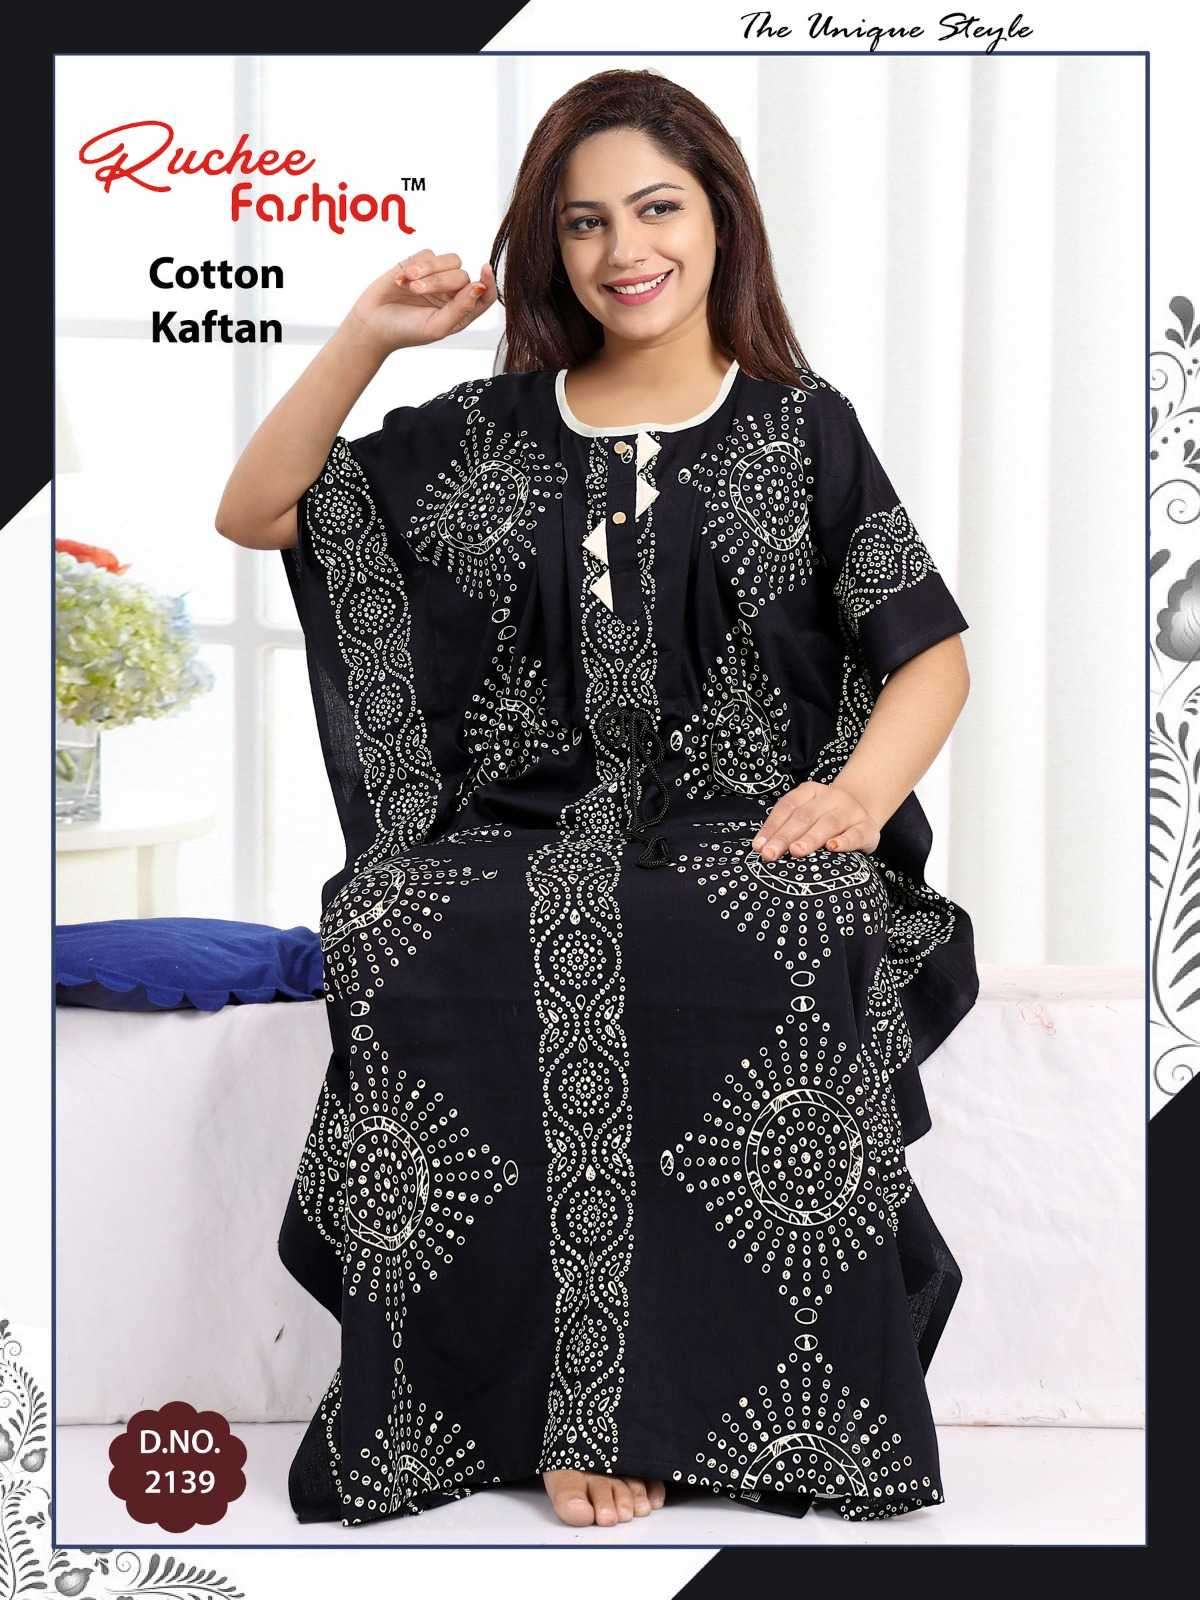 ruchee fashion cotton kaftan 2133-2140 night gown